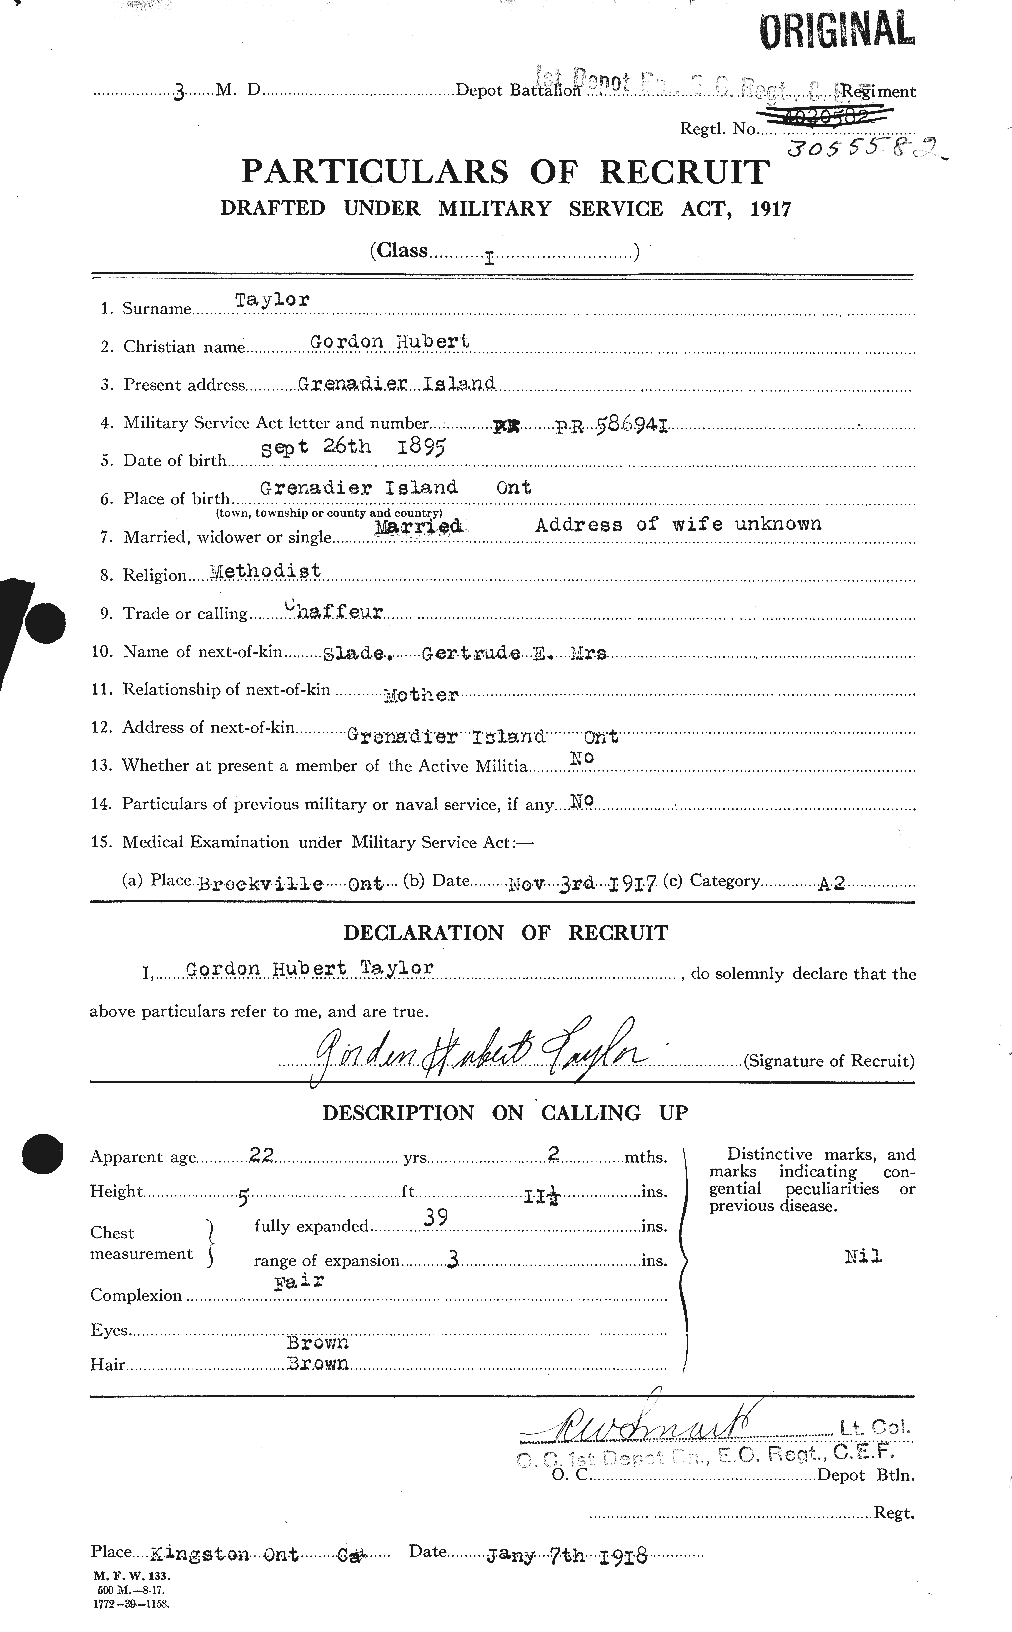 Dossiers du Personnel de la Première Guerre mondiale - CEC 626390a